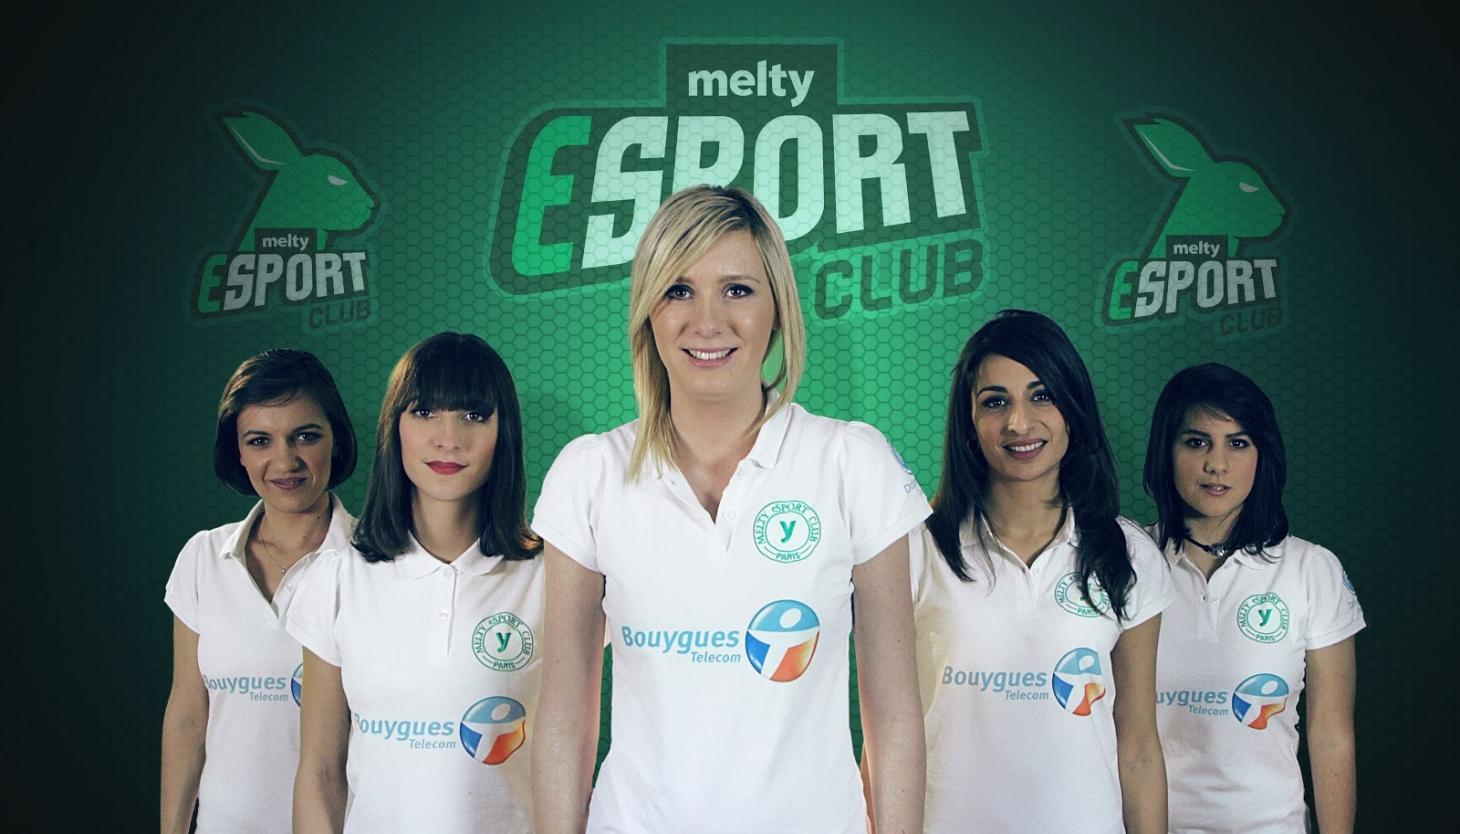 meltygroup s’est lancé dans l’esport !